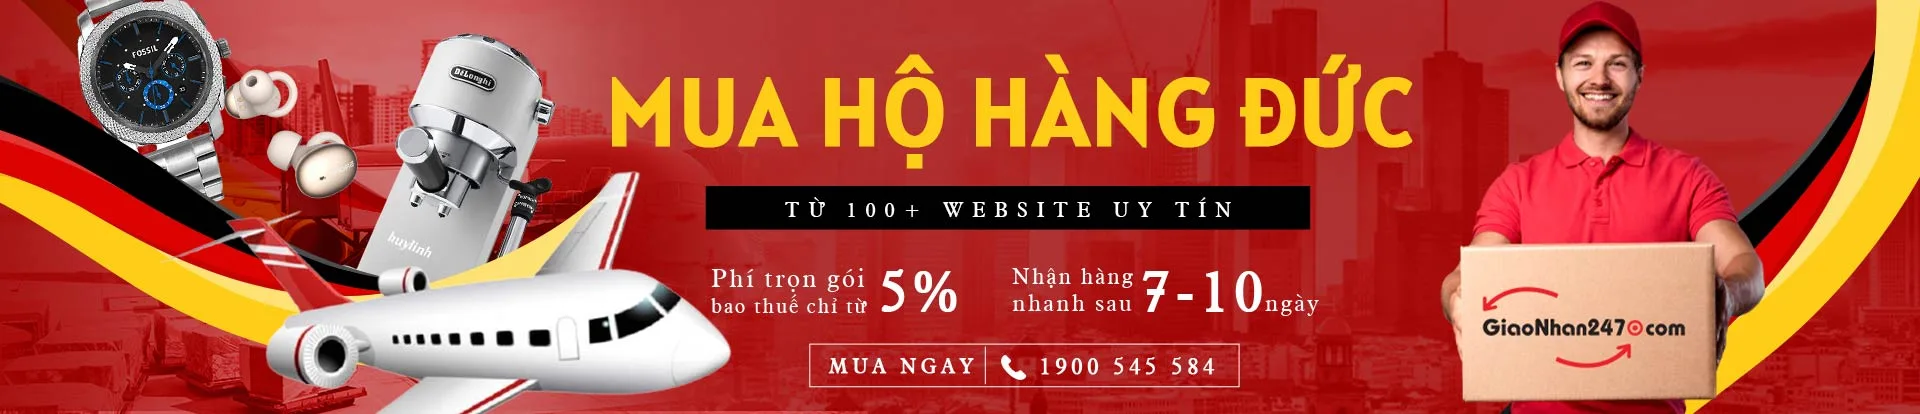 mua-ho-hang-duc-tren-website-uy-tin-desk